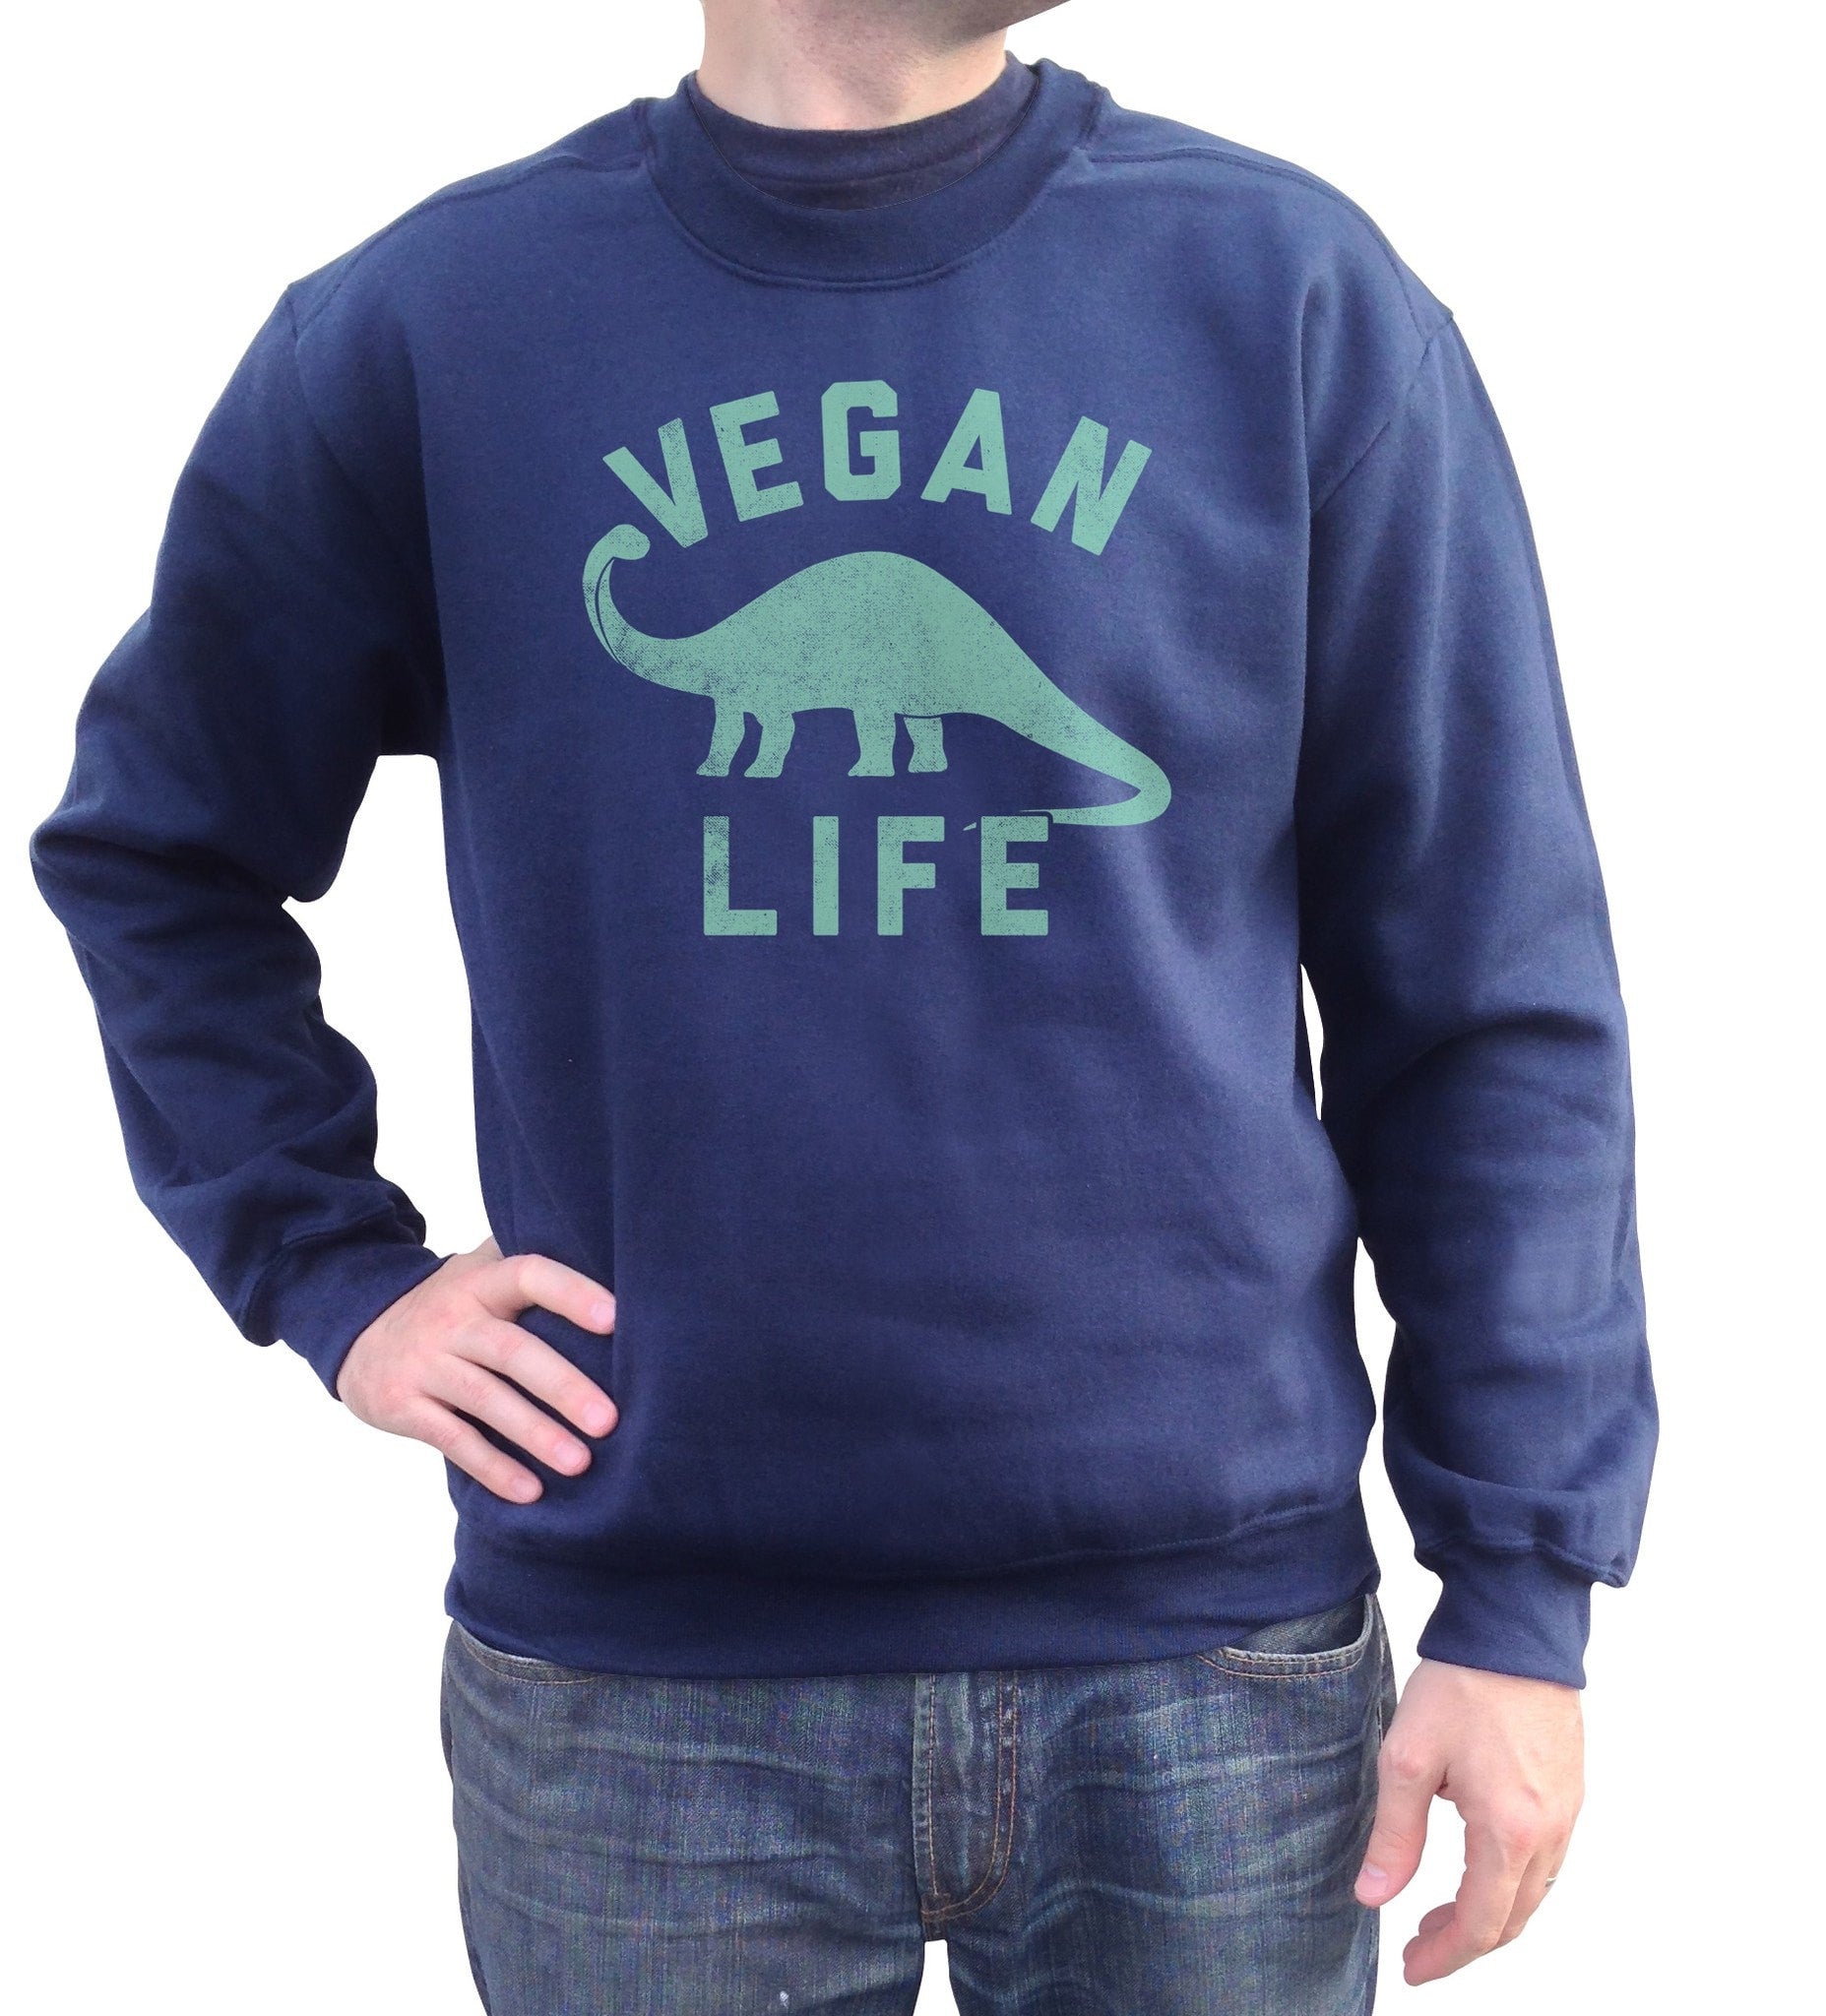 Unisex Brontosaurus Vegan Life Sweatshirt - Funny Vegan Shirt